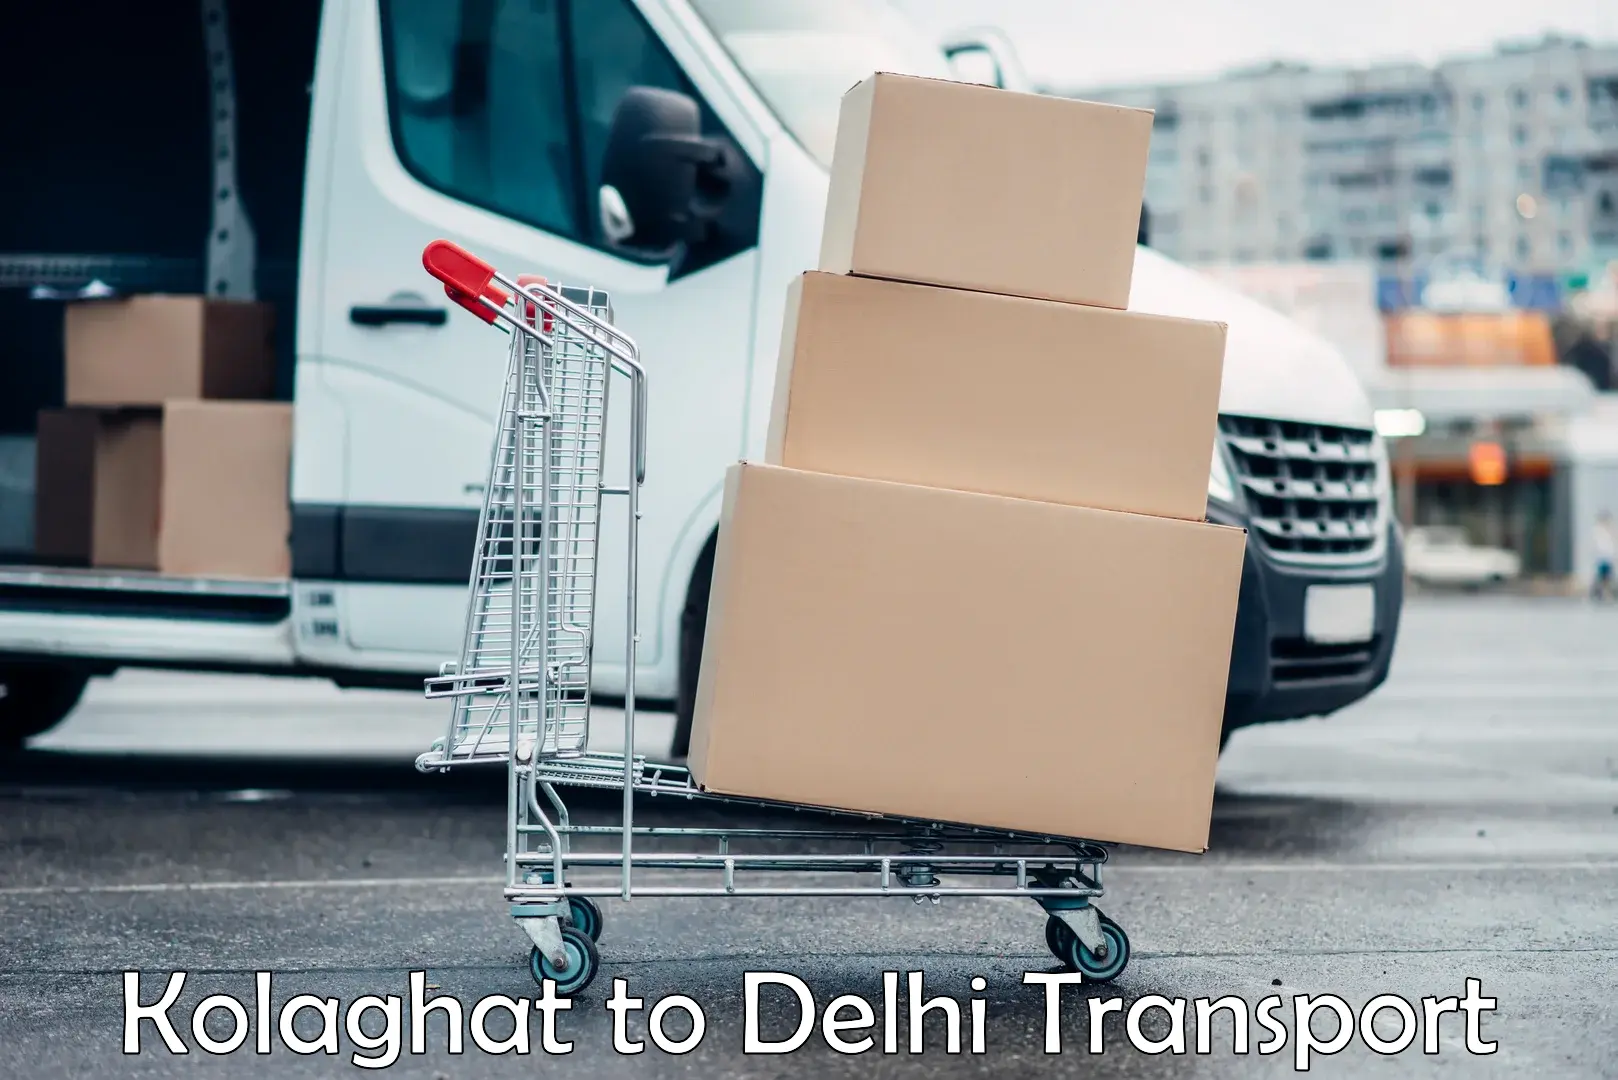 Furniture transport service Kolaghat to East Delhi